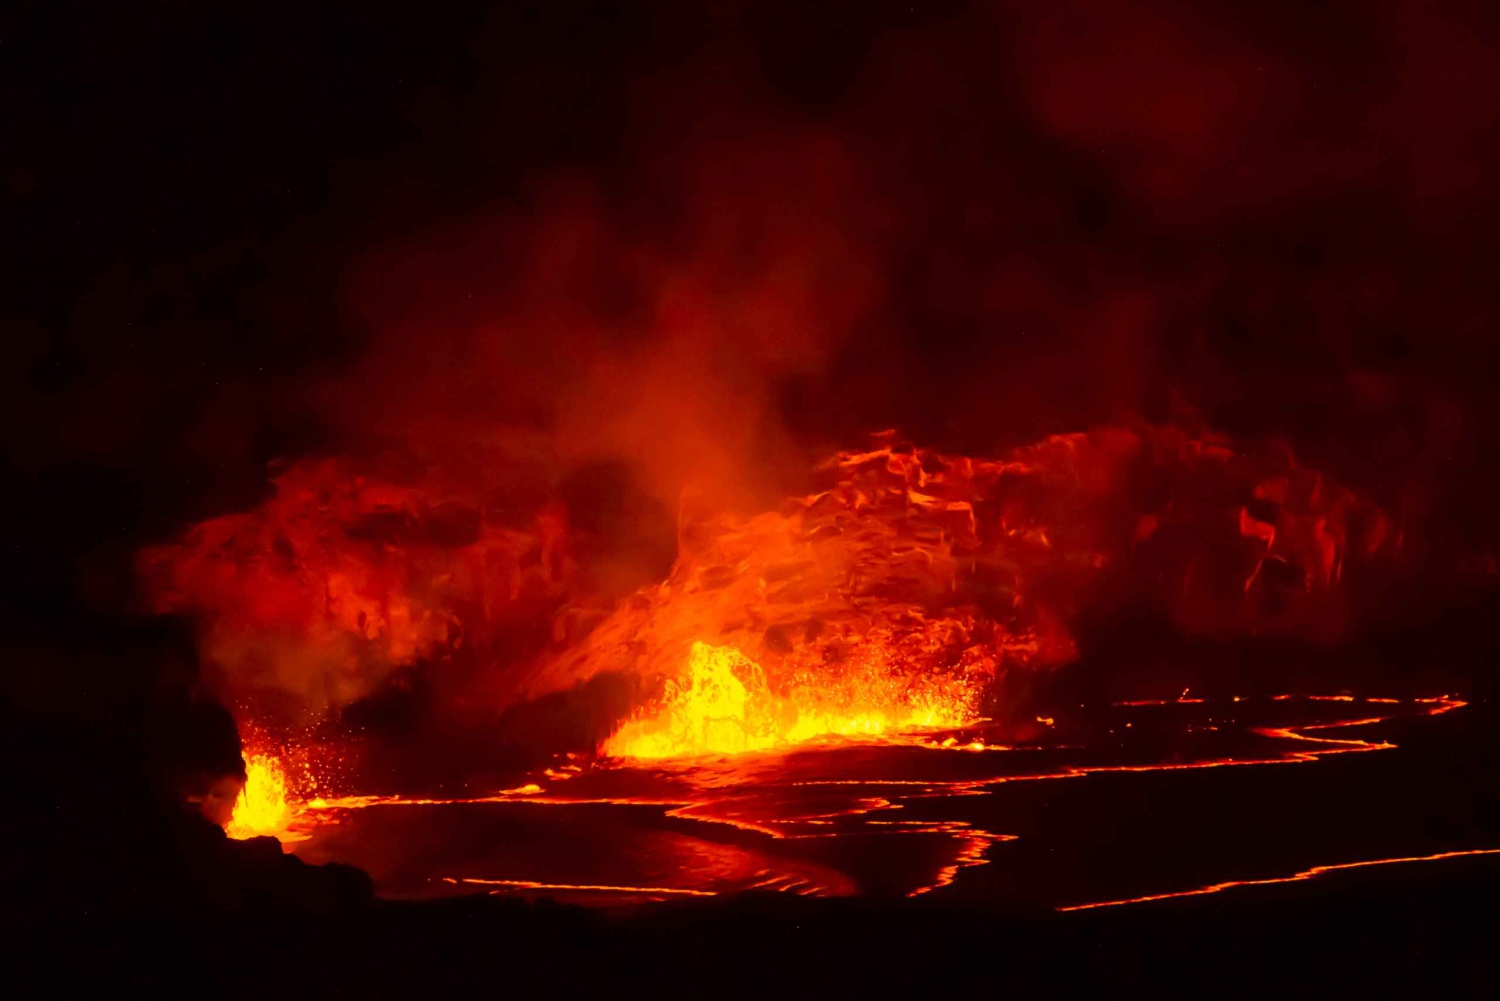 Havaí: Excursão de um dia aos vulcões da Ilha Grande com jantar e traslado